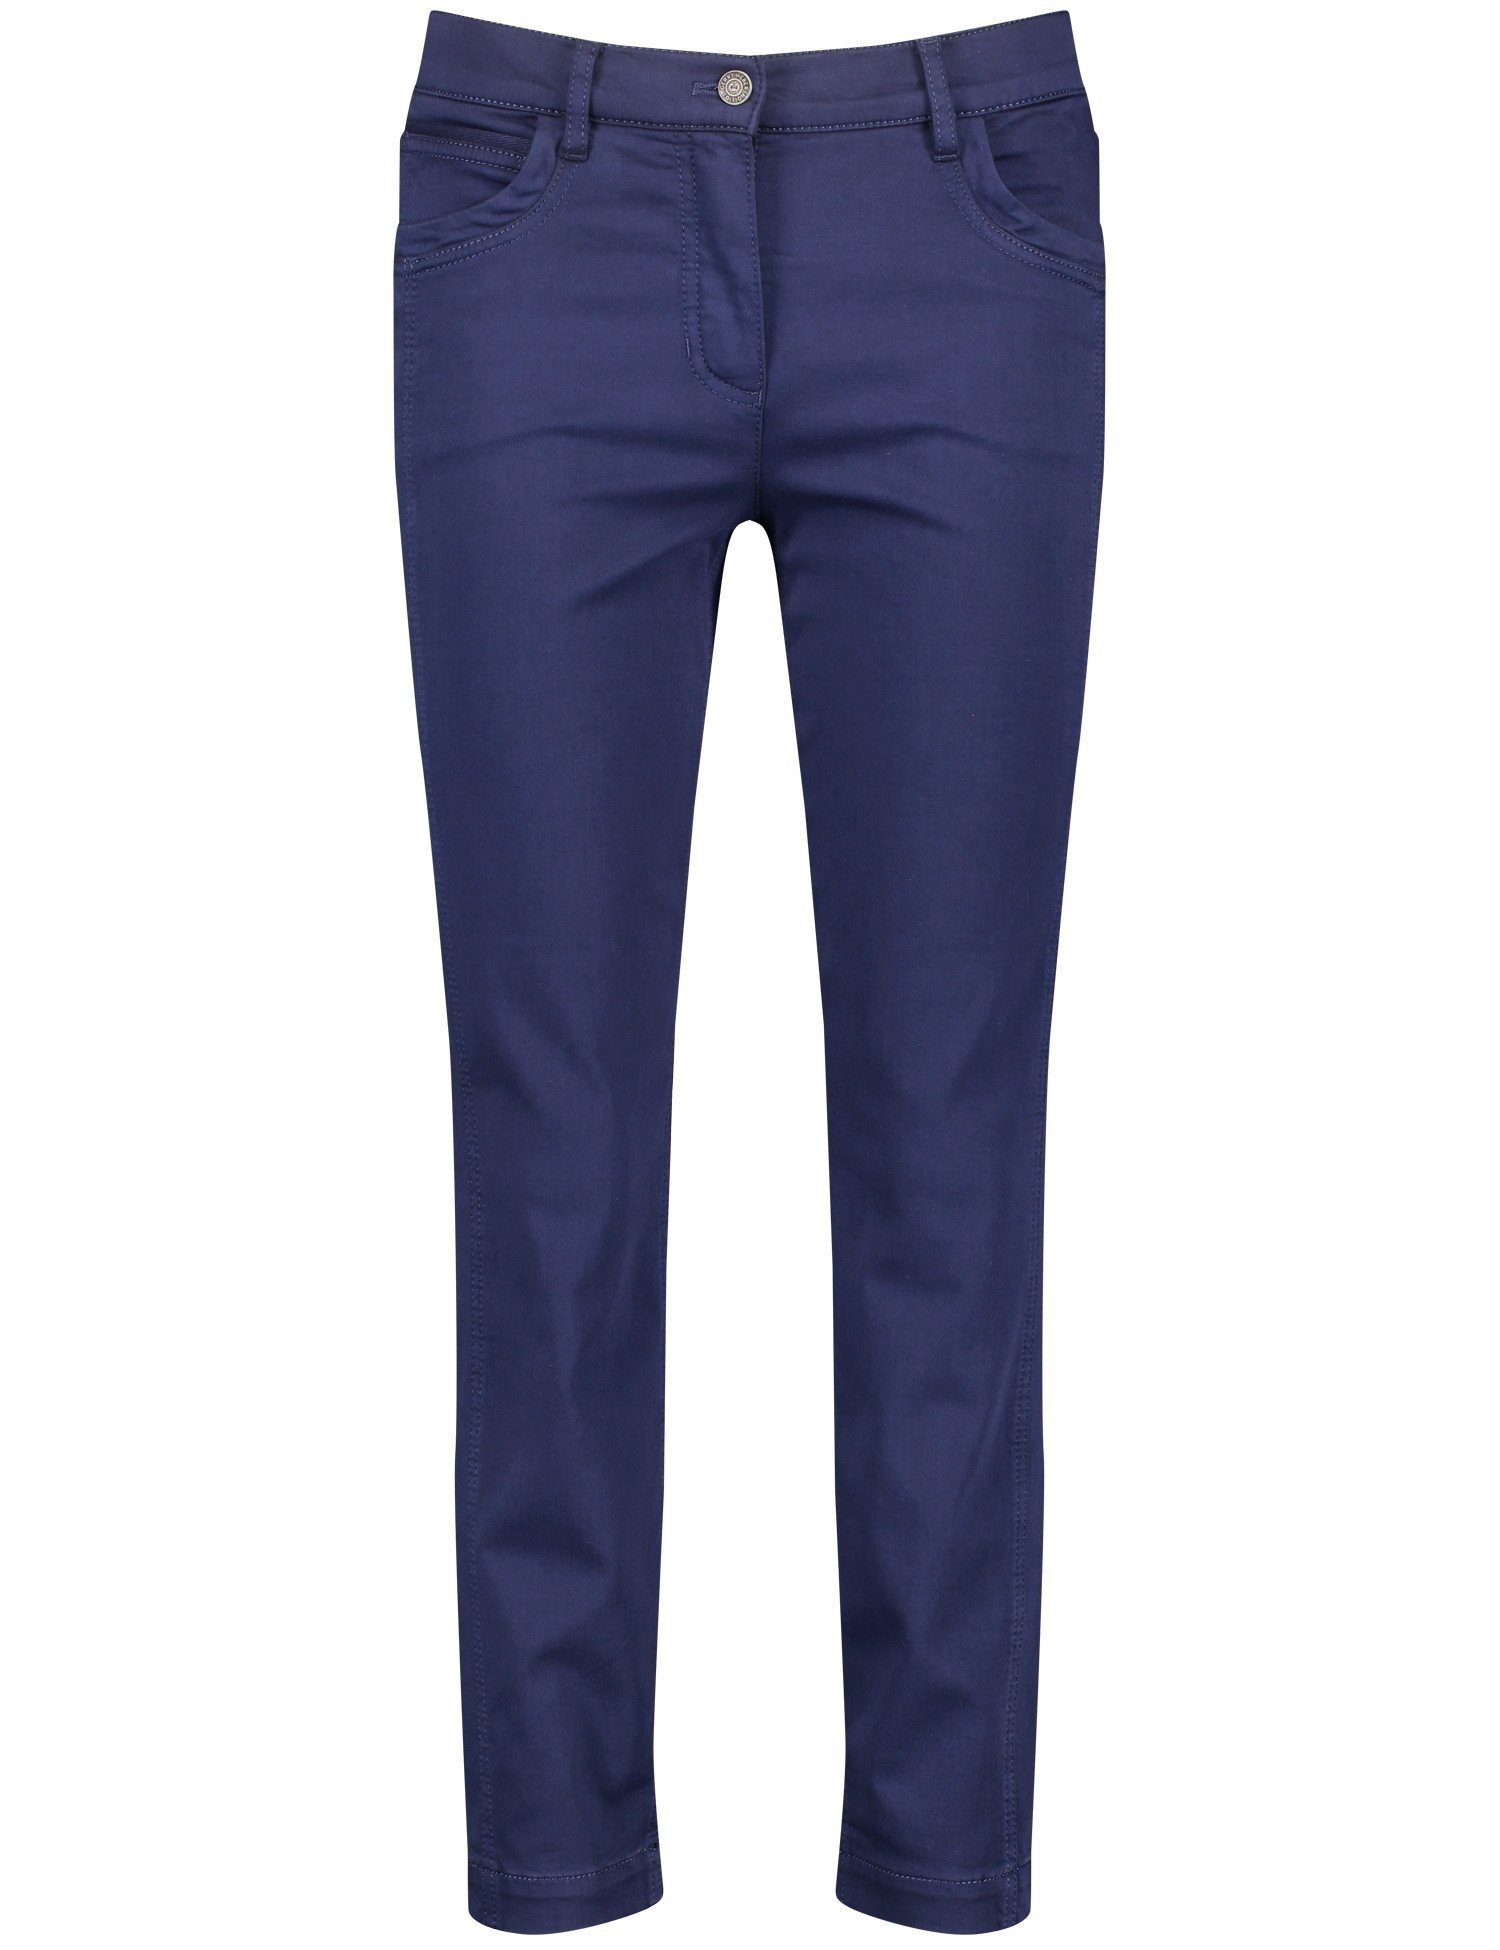 GERRY Jeans 7/8-Hose Pocket Blueberry WEBER 5 CROPPED BEST4ME